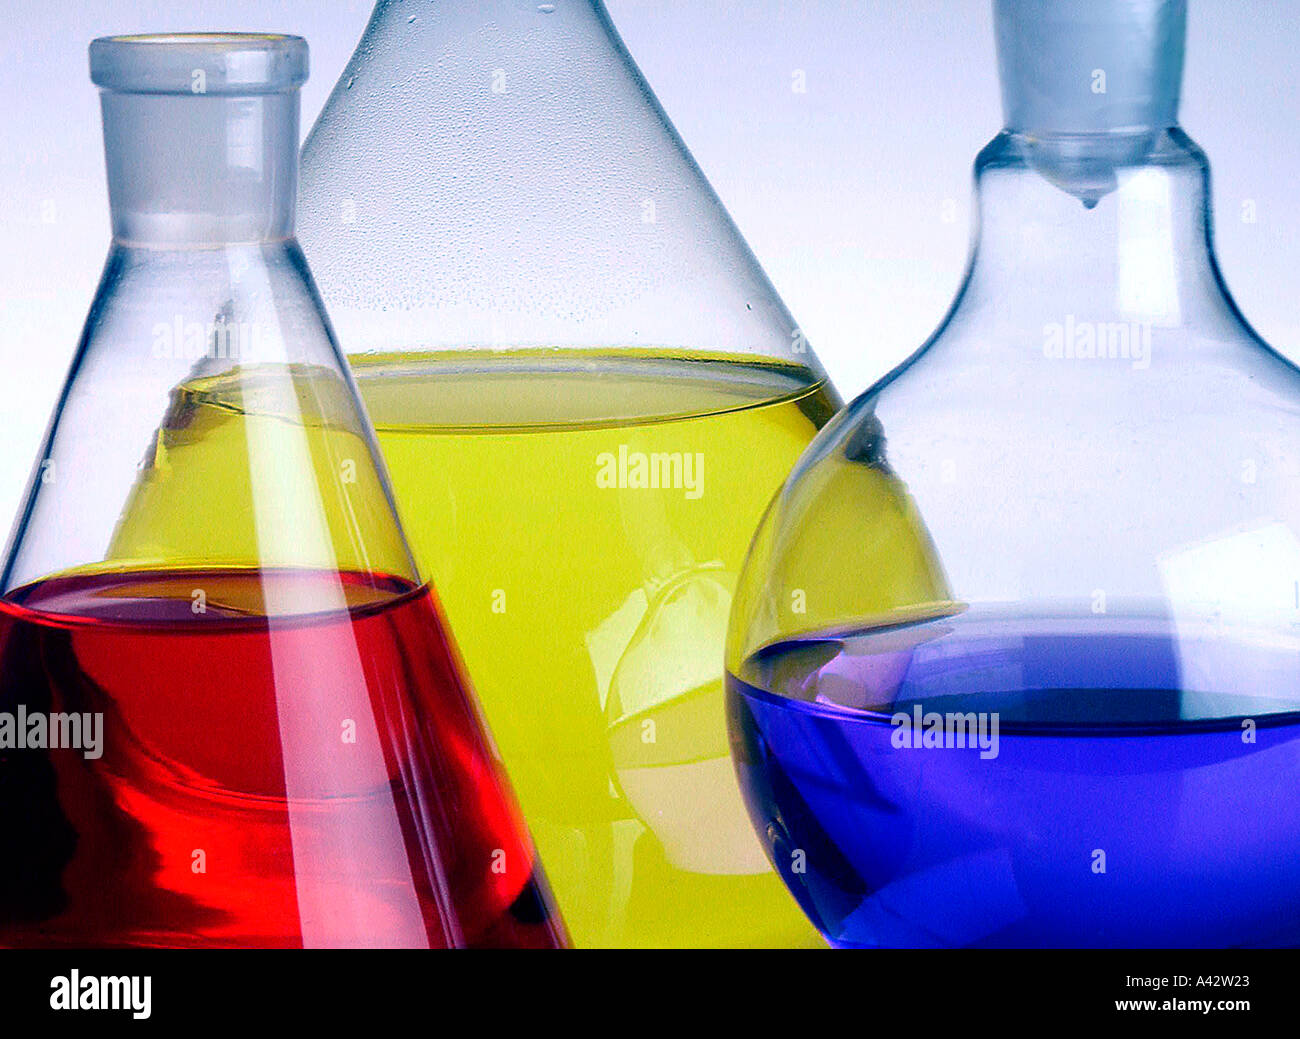 Erlemmeyer piston with colored chemicals Erlemmeyer Kolben mit farbigen Chemikalien Stock Photo